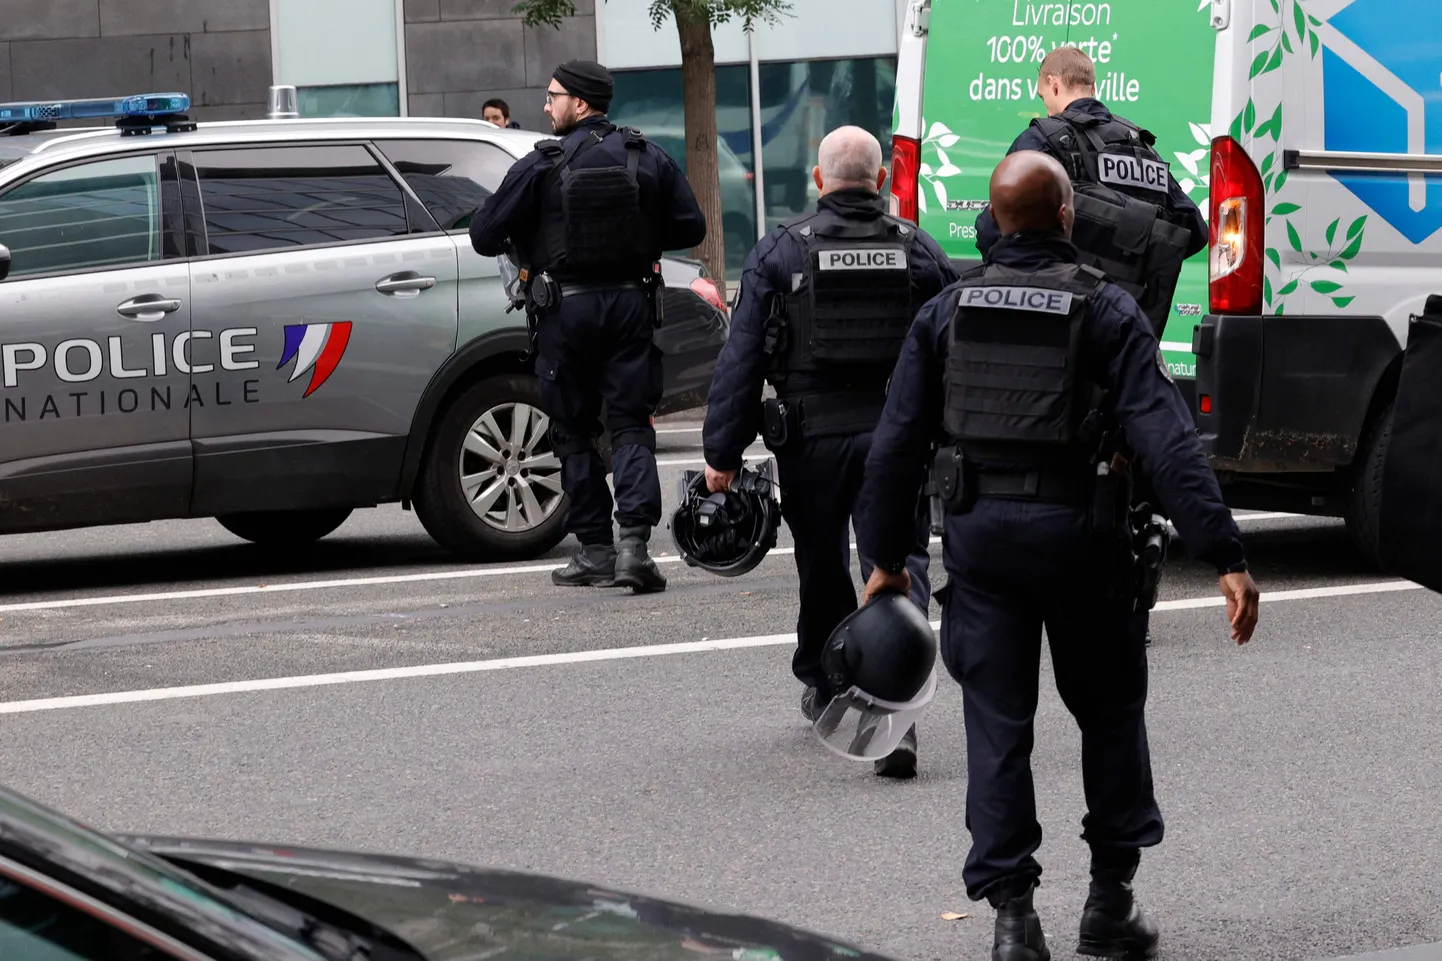 Prantsuse politsei metroojaama lähedal, kus korrakaitsjad tulistasid ähvardusi teinud naist.